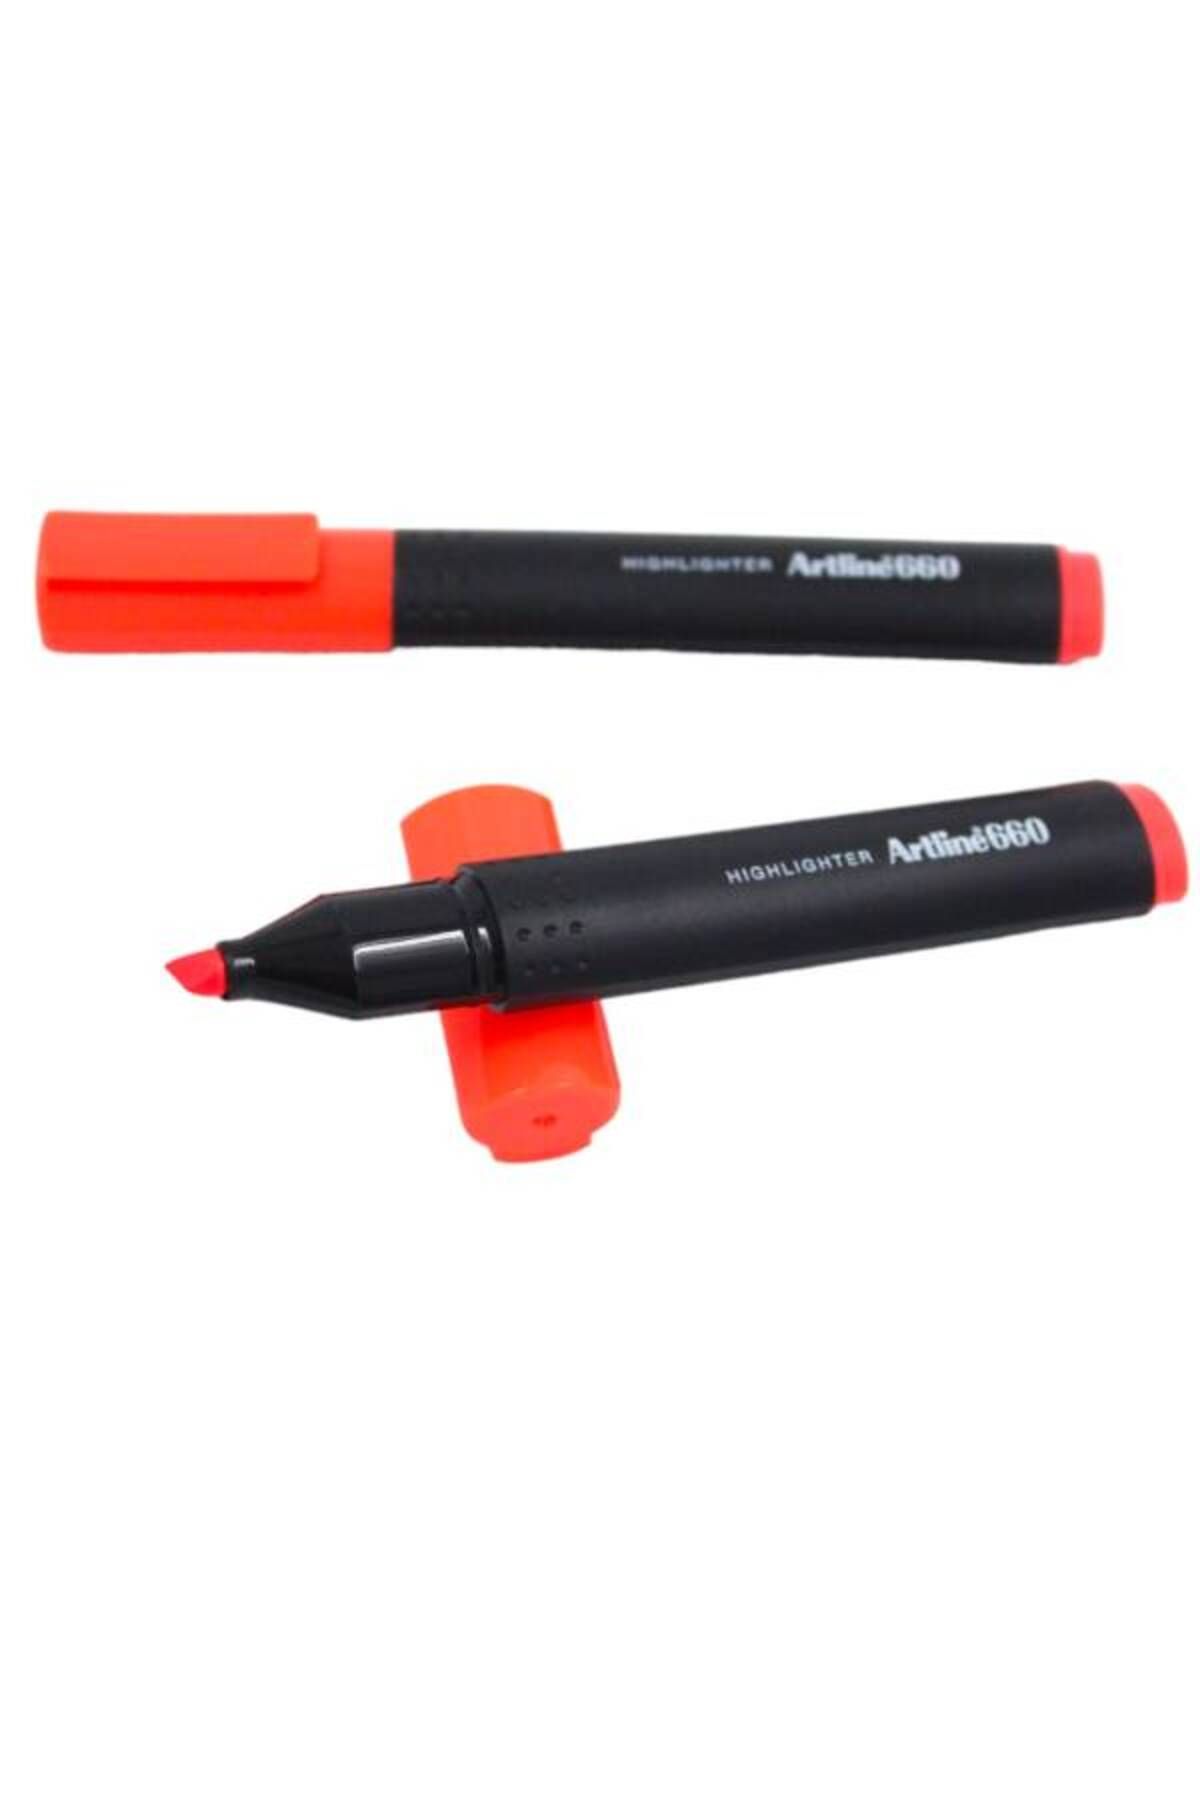 artline Ek-660 Kırmızı Fosforlu Kalem